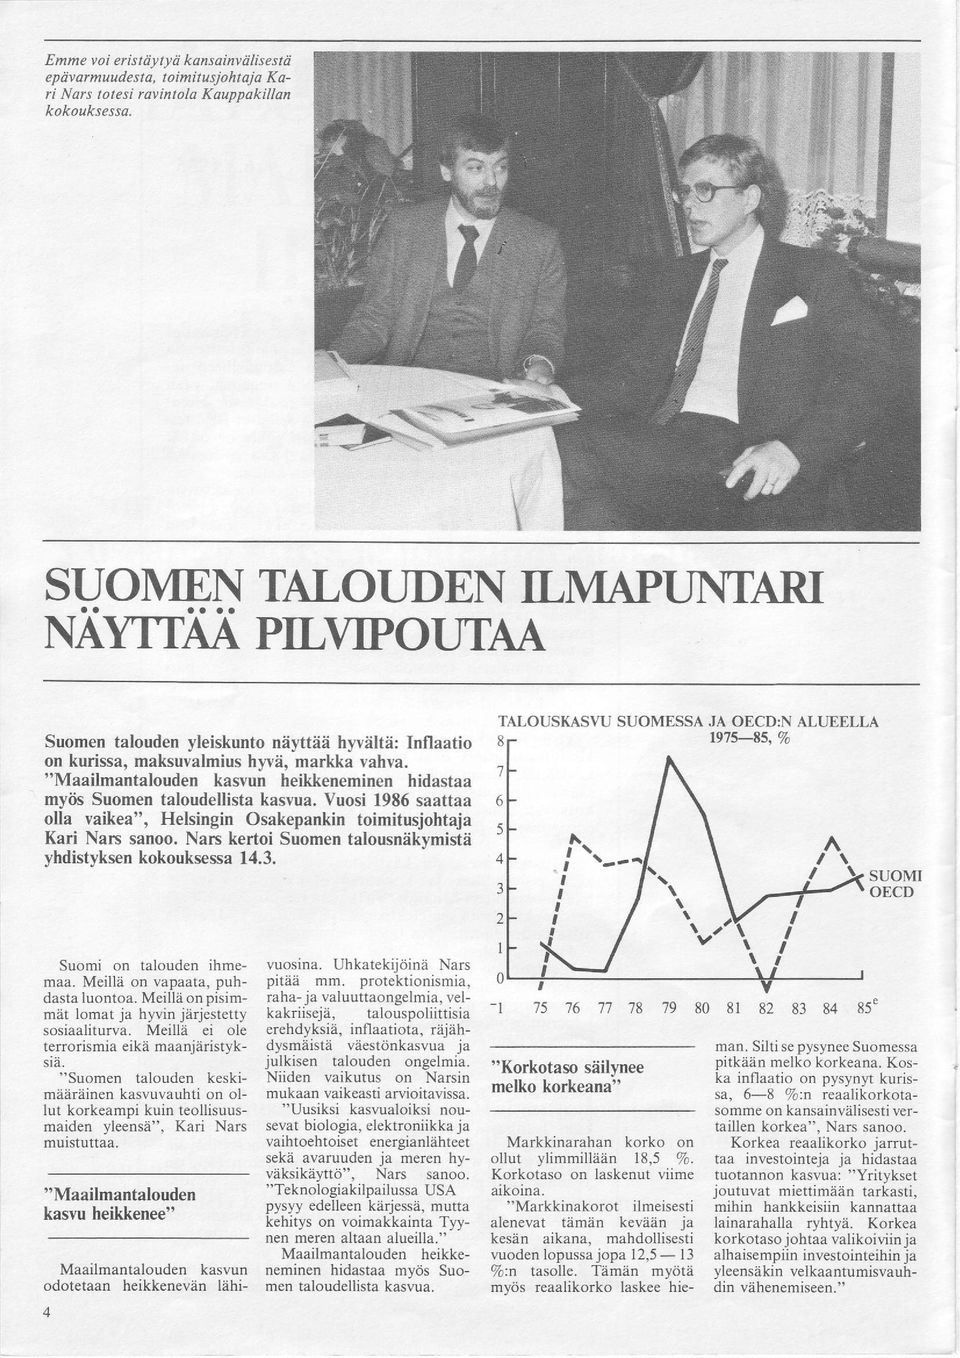 "Maailmantalouden kasvun heikkeneminen hidastaa myiis Suomen taloudellista kasvua. Vuosi 1986 saattaa olla vaikea", Helsingin Osakepankin toimitusjohtaja Kari Narc sanoo.